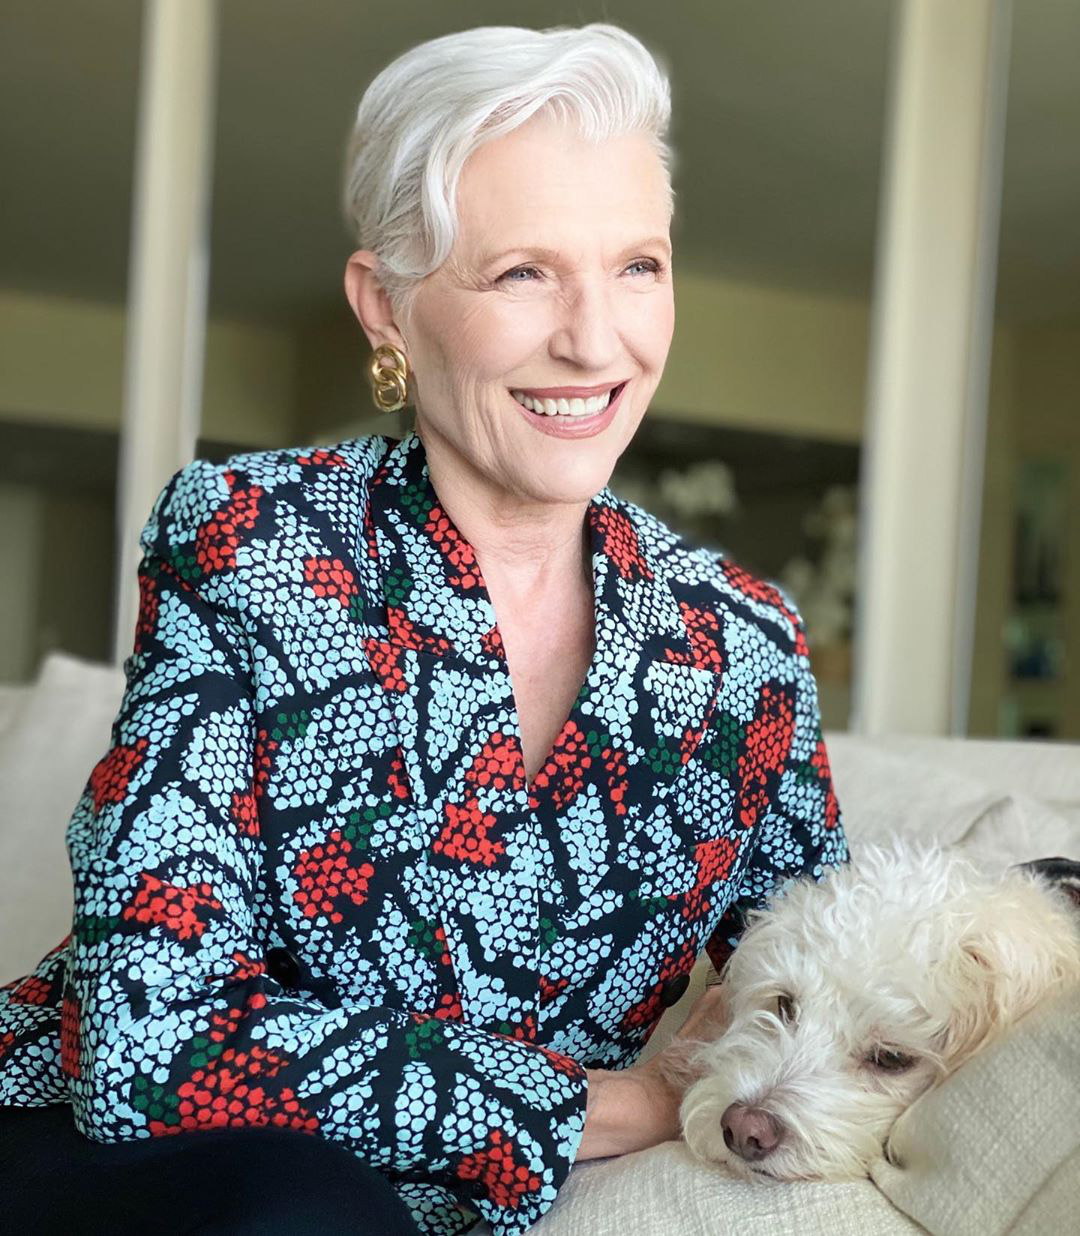 Cụ bà 72 tuổi chia sẻ 3 bước skincare quan trọng nhất cuộc đời: Mới 15 tuổi, tôi đã biết chống nắng từ đầu tới chân - Ảnh 3.